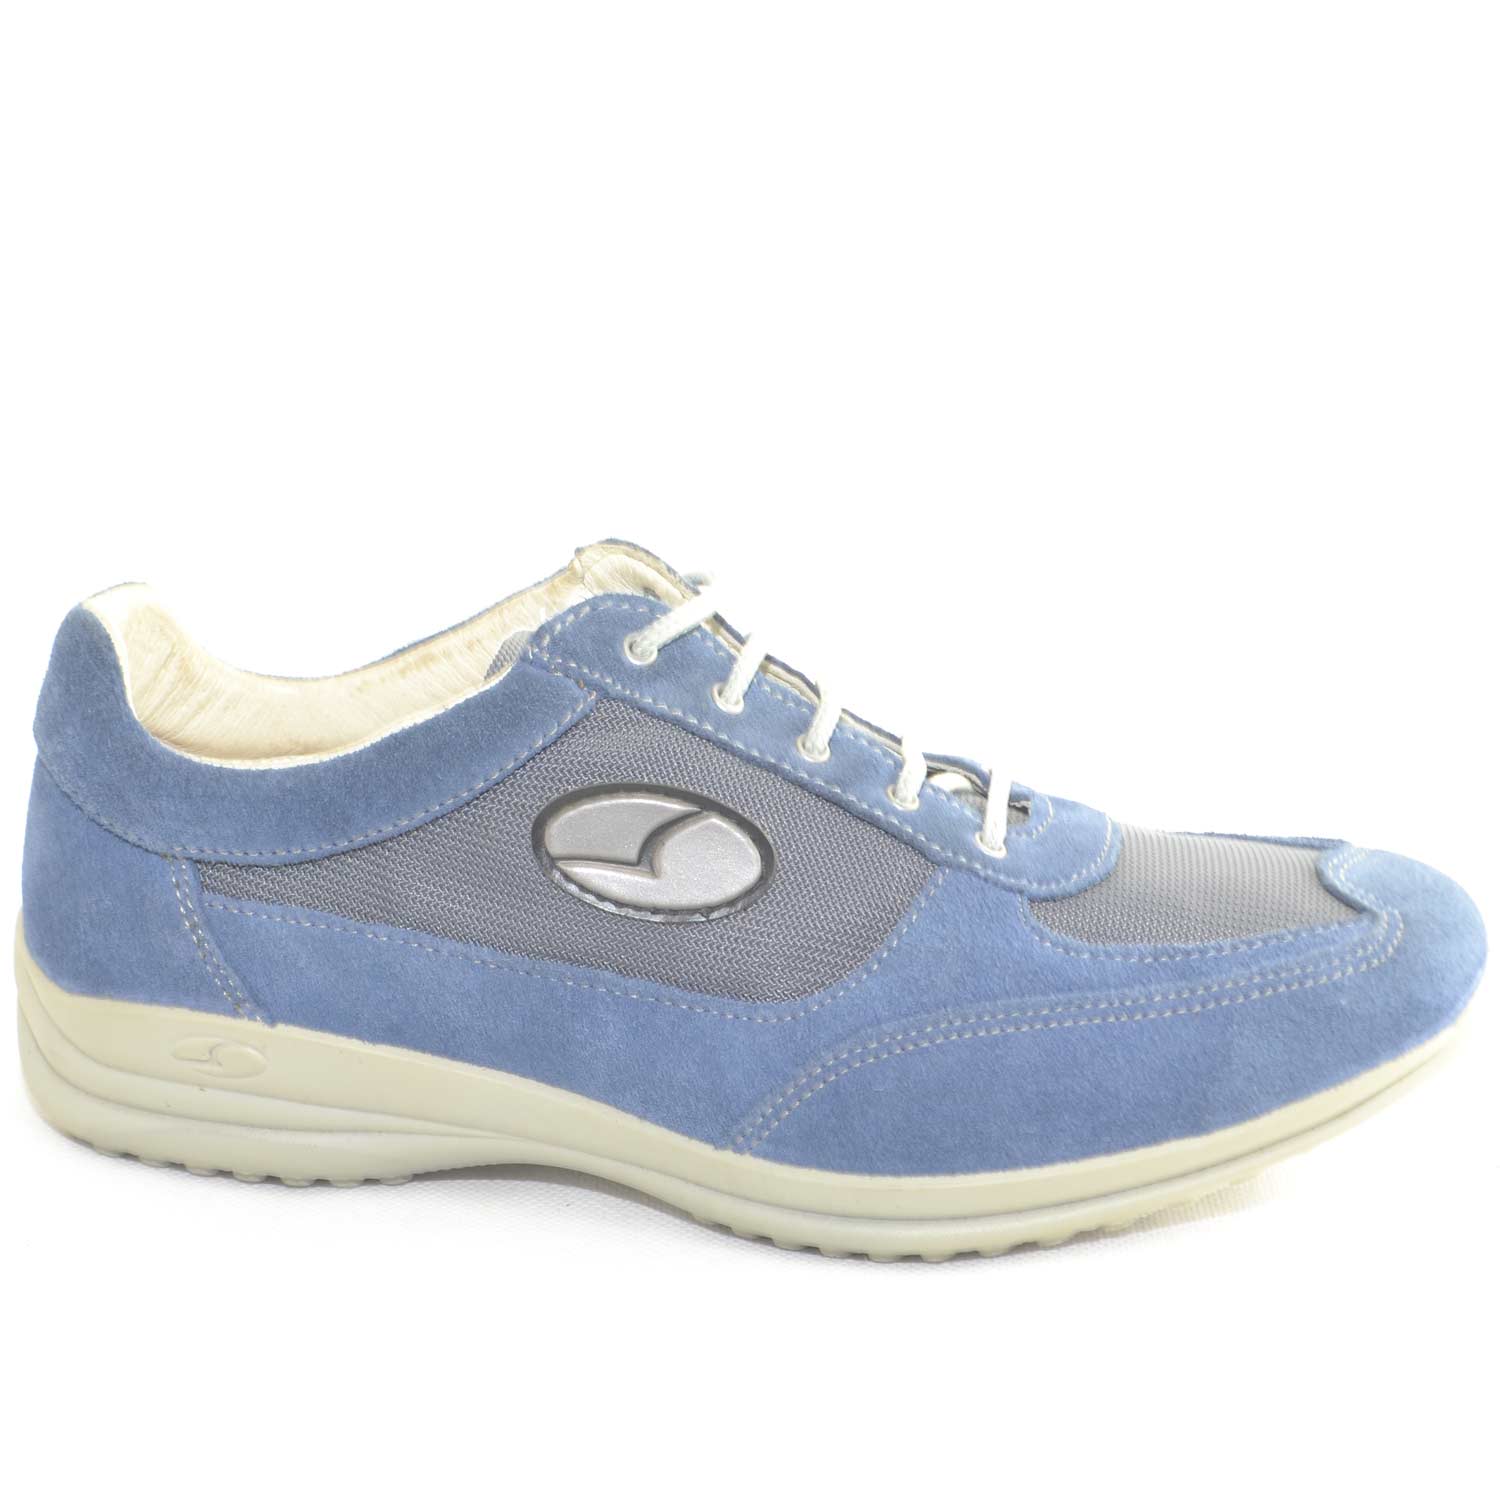 Sneakers Sportive Scarpe blu chiaro Uomo Light Step GRISPORT 8123 Made in  Italy | eBay